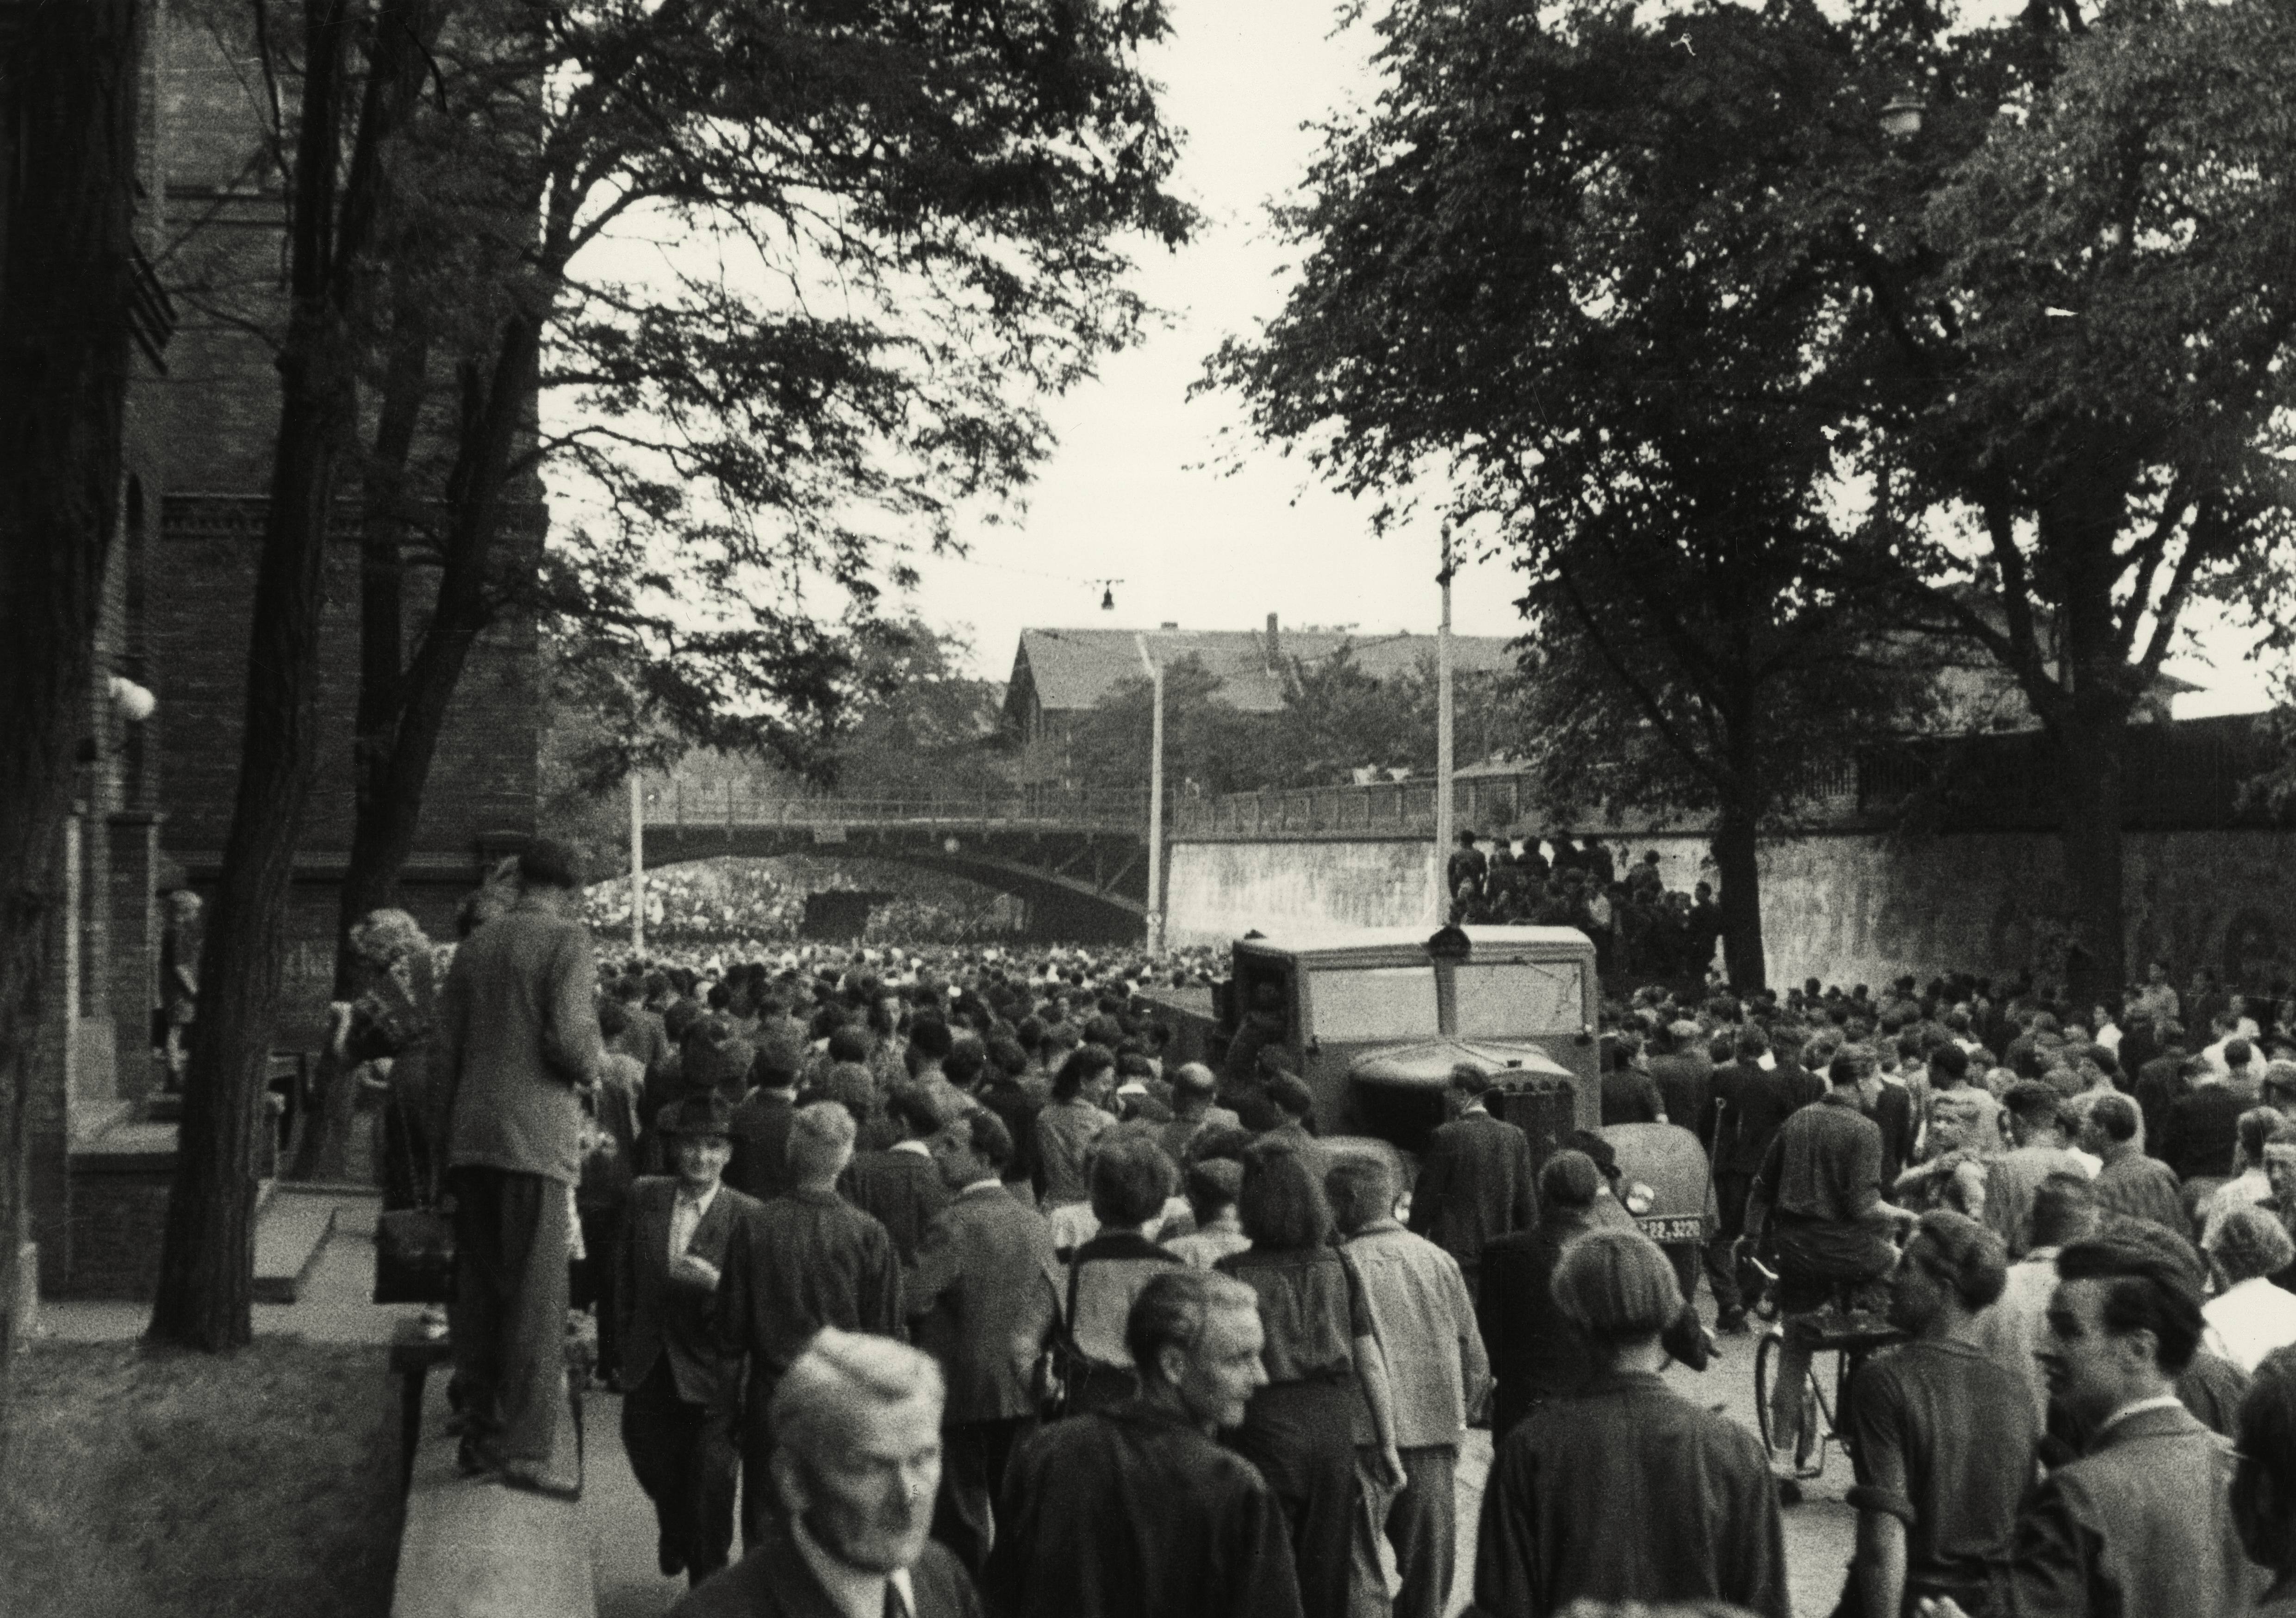 Volksaufstand in der DDR am 17. Juni 1953. Demonstration in Magdeburg